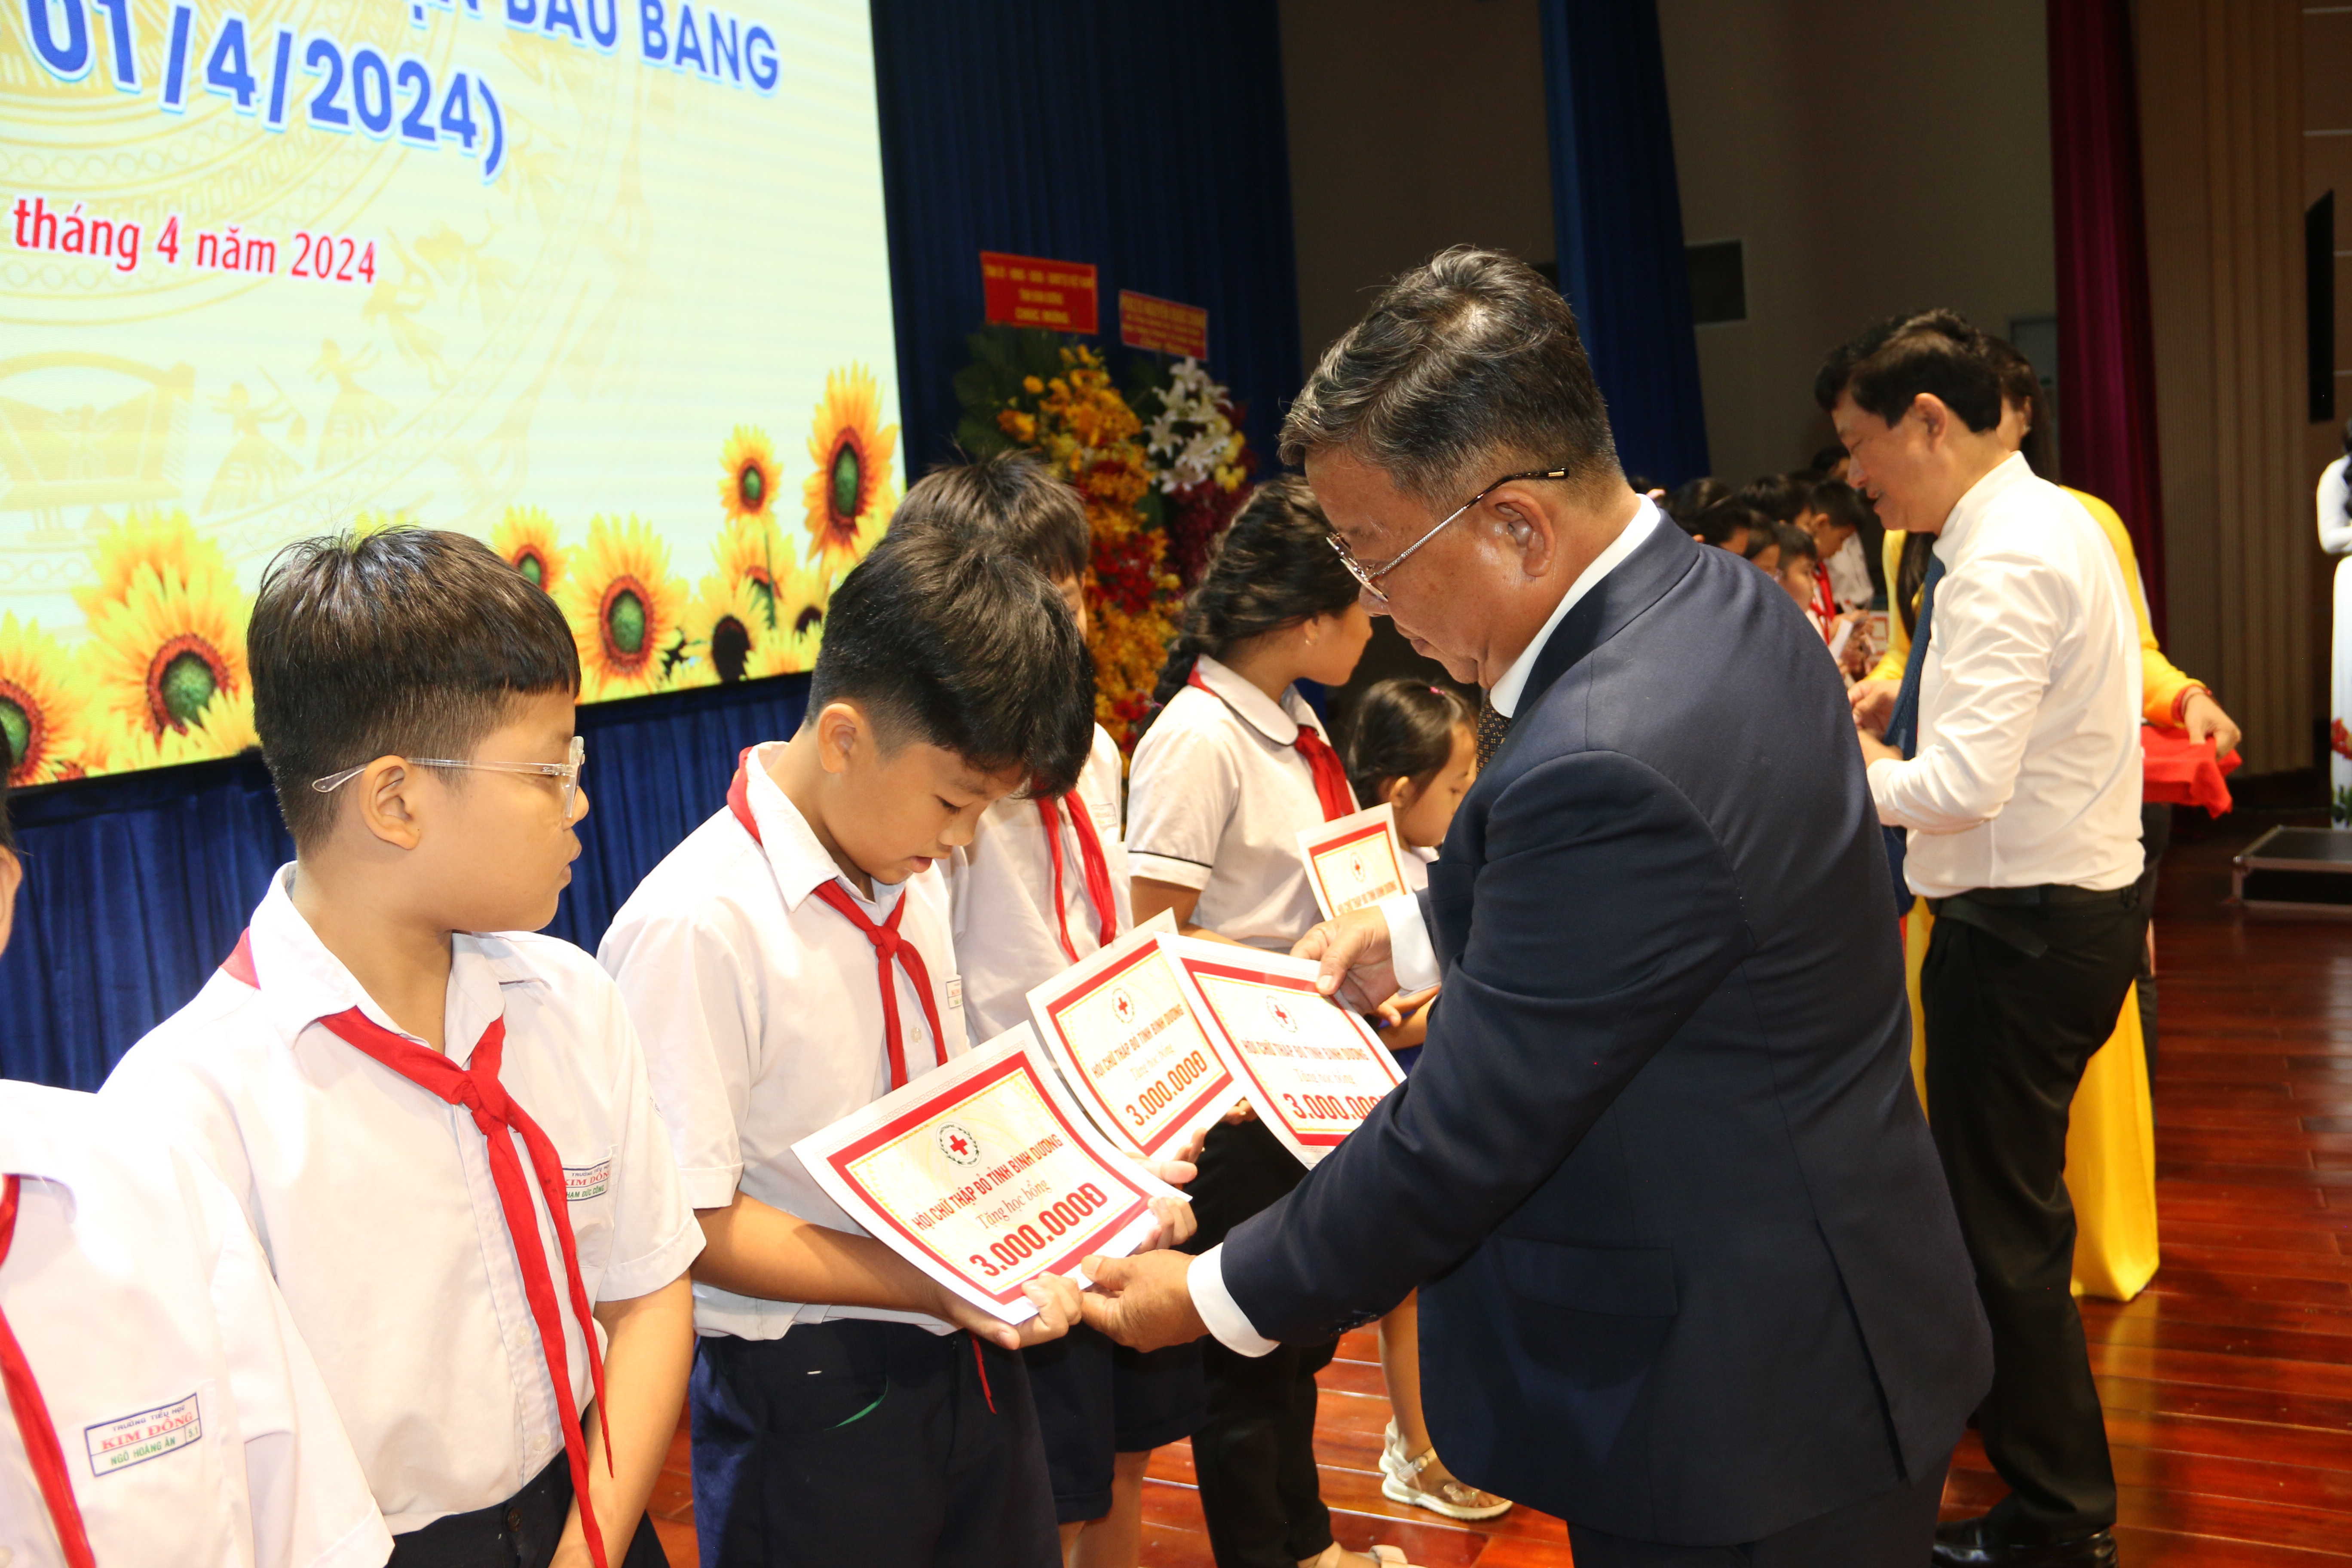 ông Nguyễn Thanh Khiêm-Bí thư Huyên ủy trao tặng quà cho các học sinh tại lễ kỷ niệm